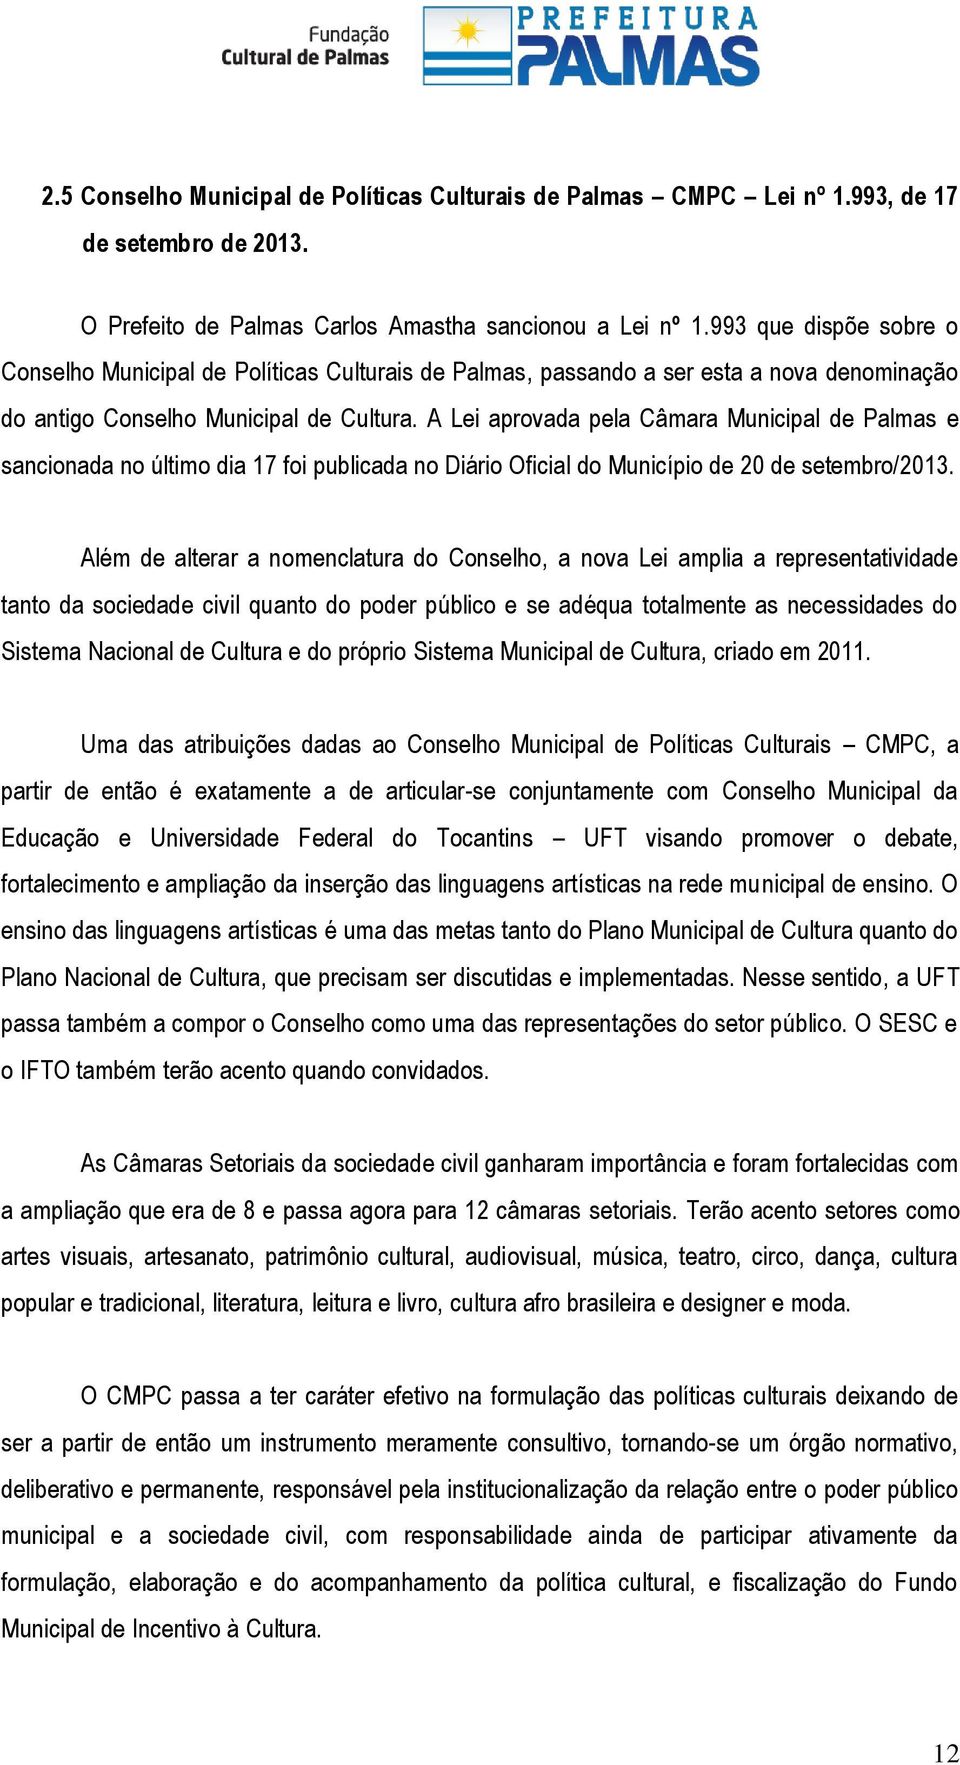 A Lei aprovada pela Câmara Municipal de Palmas e sancionada no último dia 17 foi publicada no Diário Oficial do Município de 20 de setembro/2013.